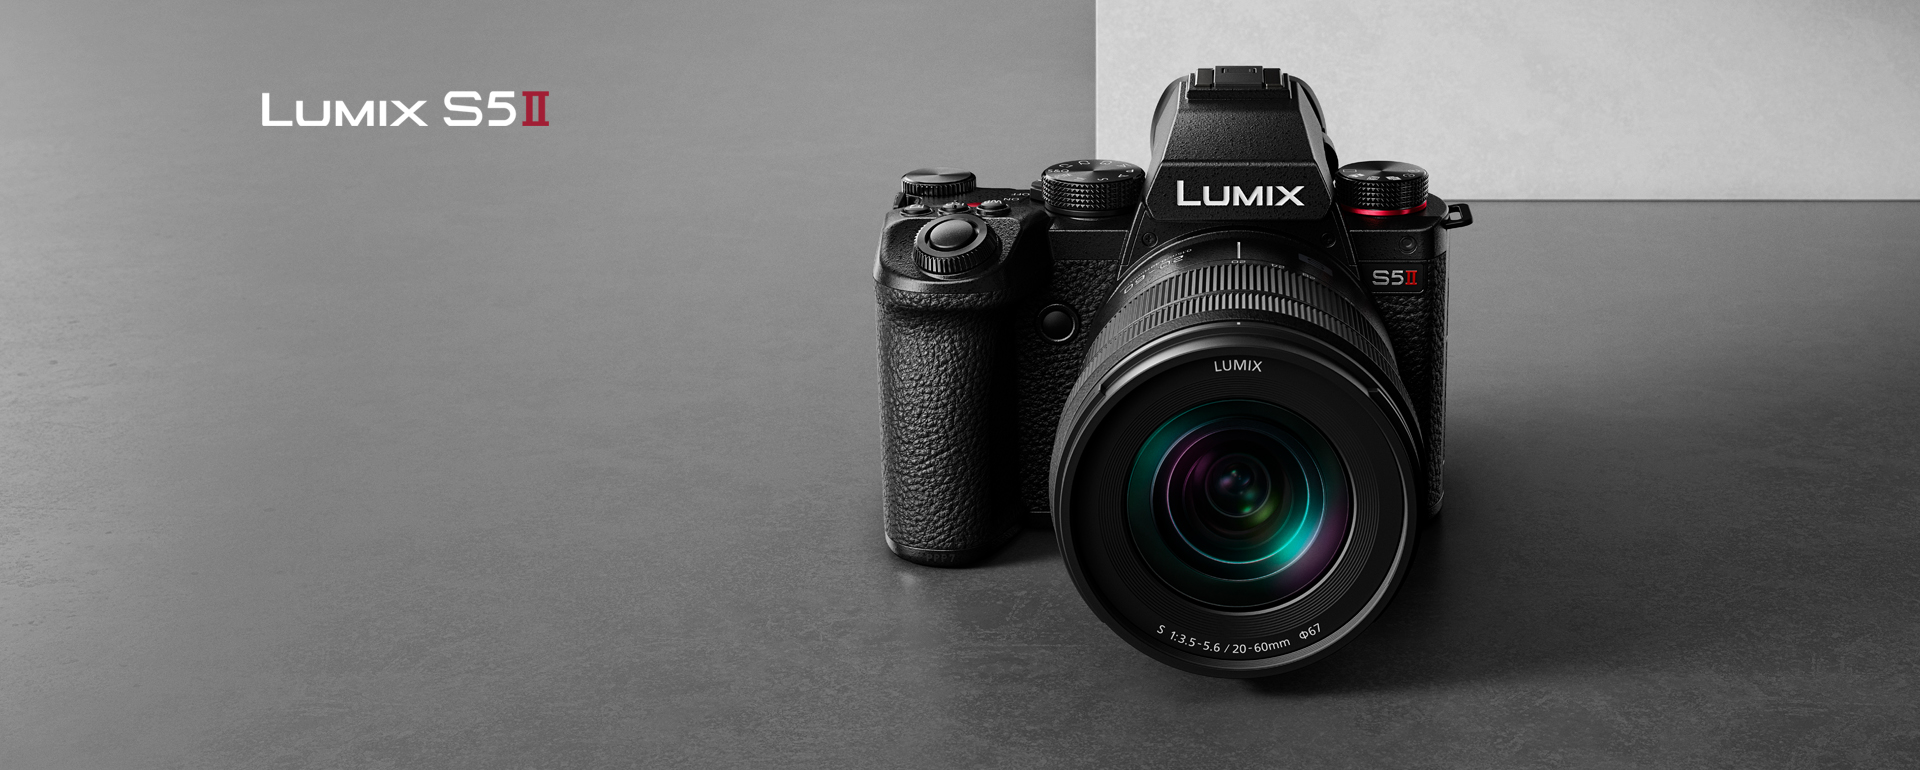 Z novim fotoaparatom LUMIX S5MII se osredotočite na pomembne stvari